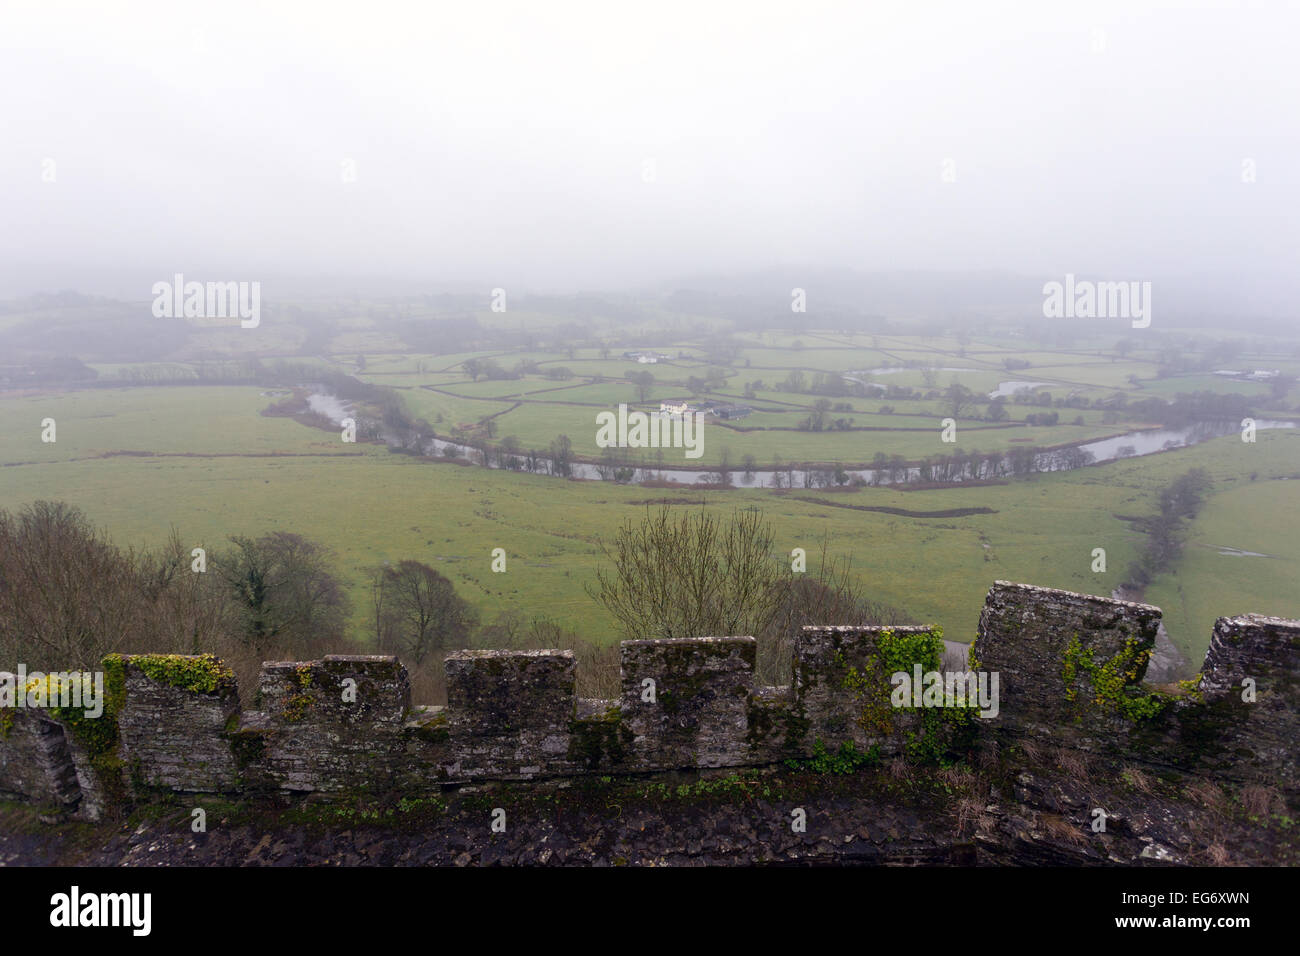 Misty vue sur le Twyi (Towie) rivière de Dinefwr Castle, Llandeilo, un bastion historique dans le sud du Pays de Galles, UK, maintenant administrer Banque D'Images